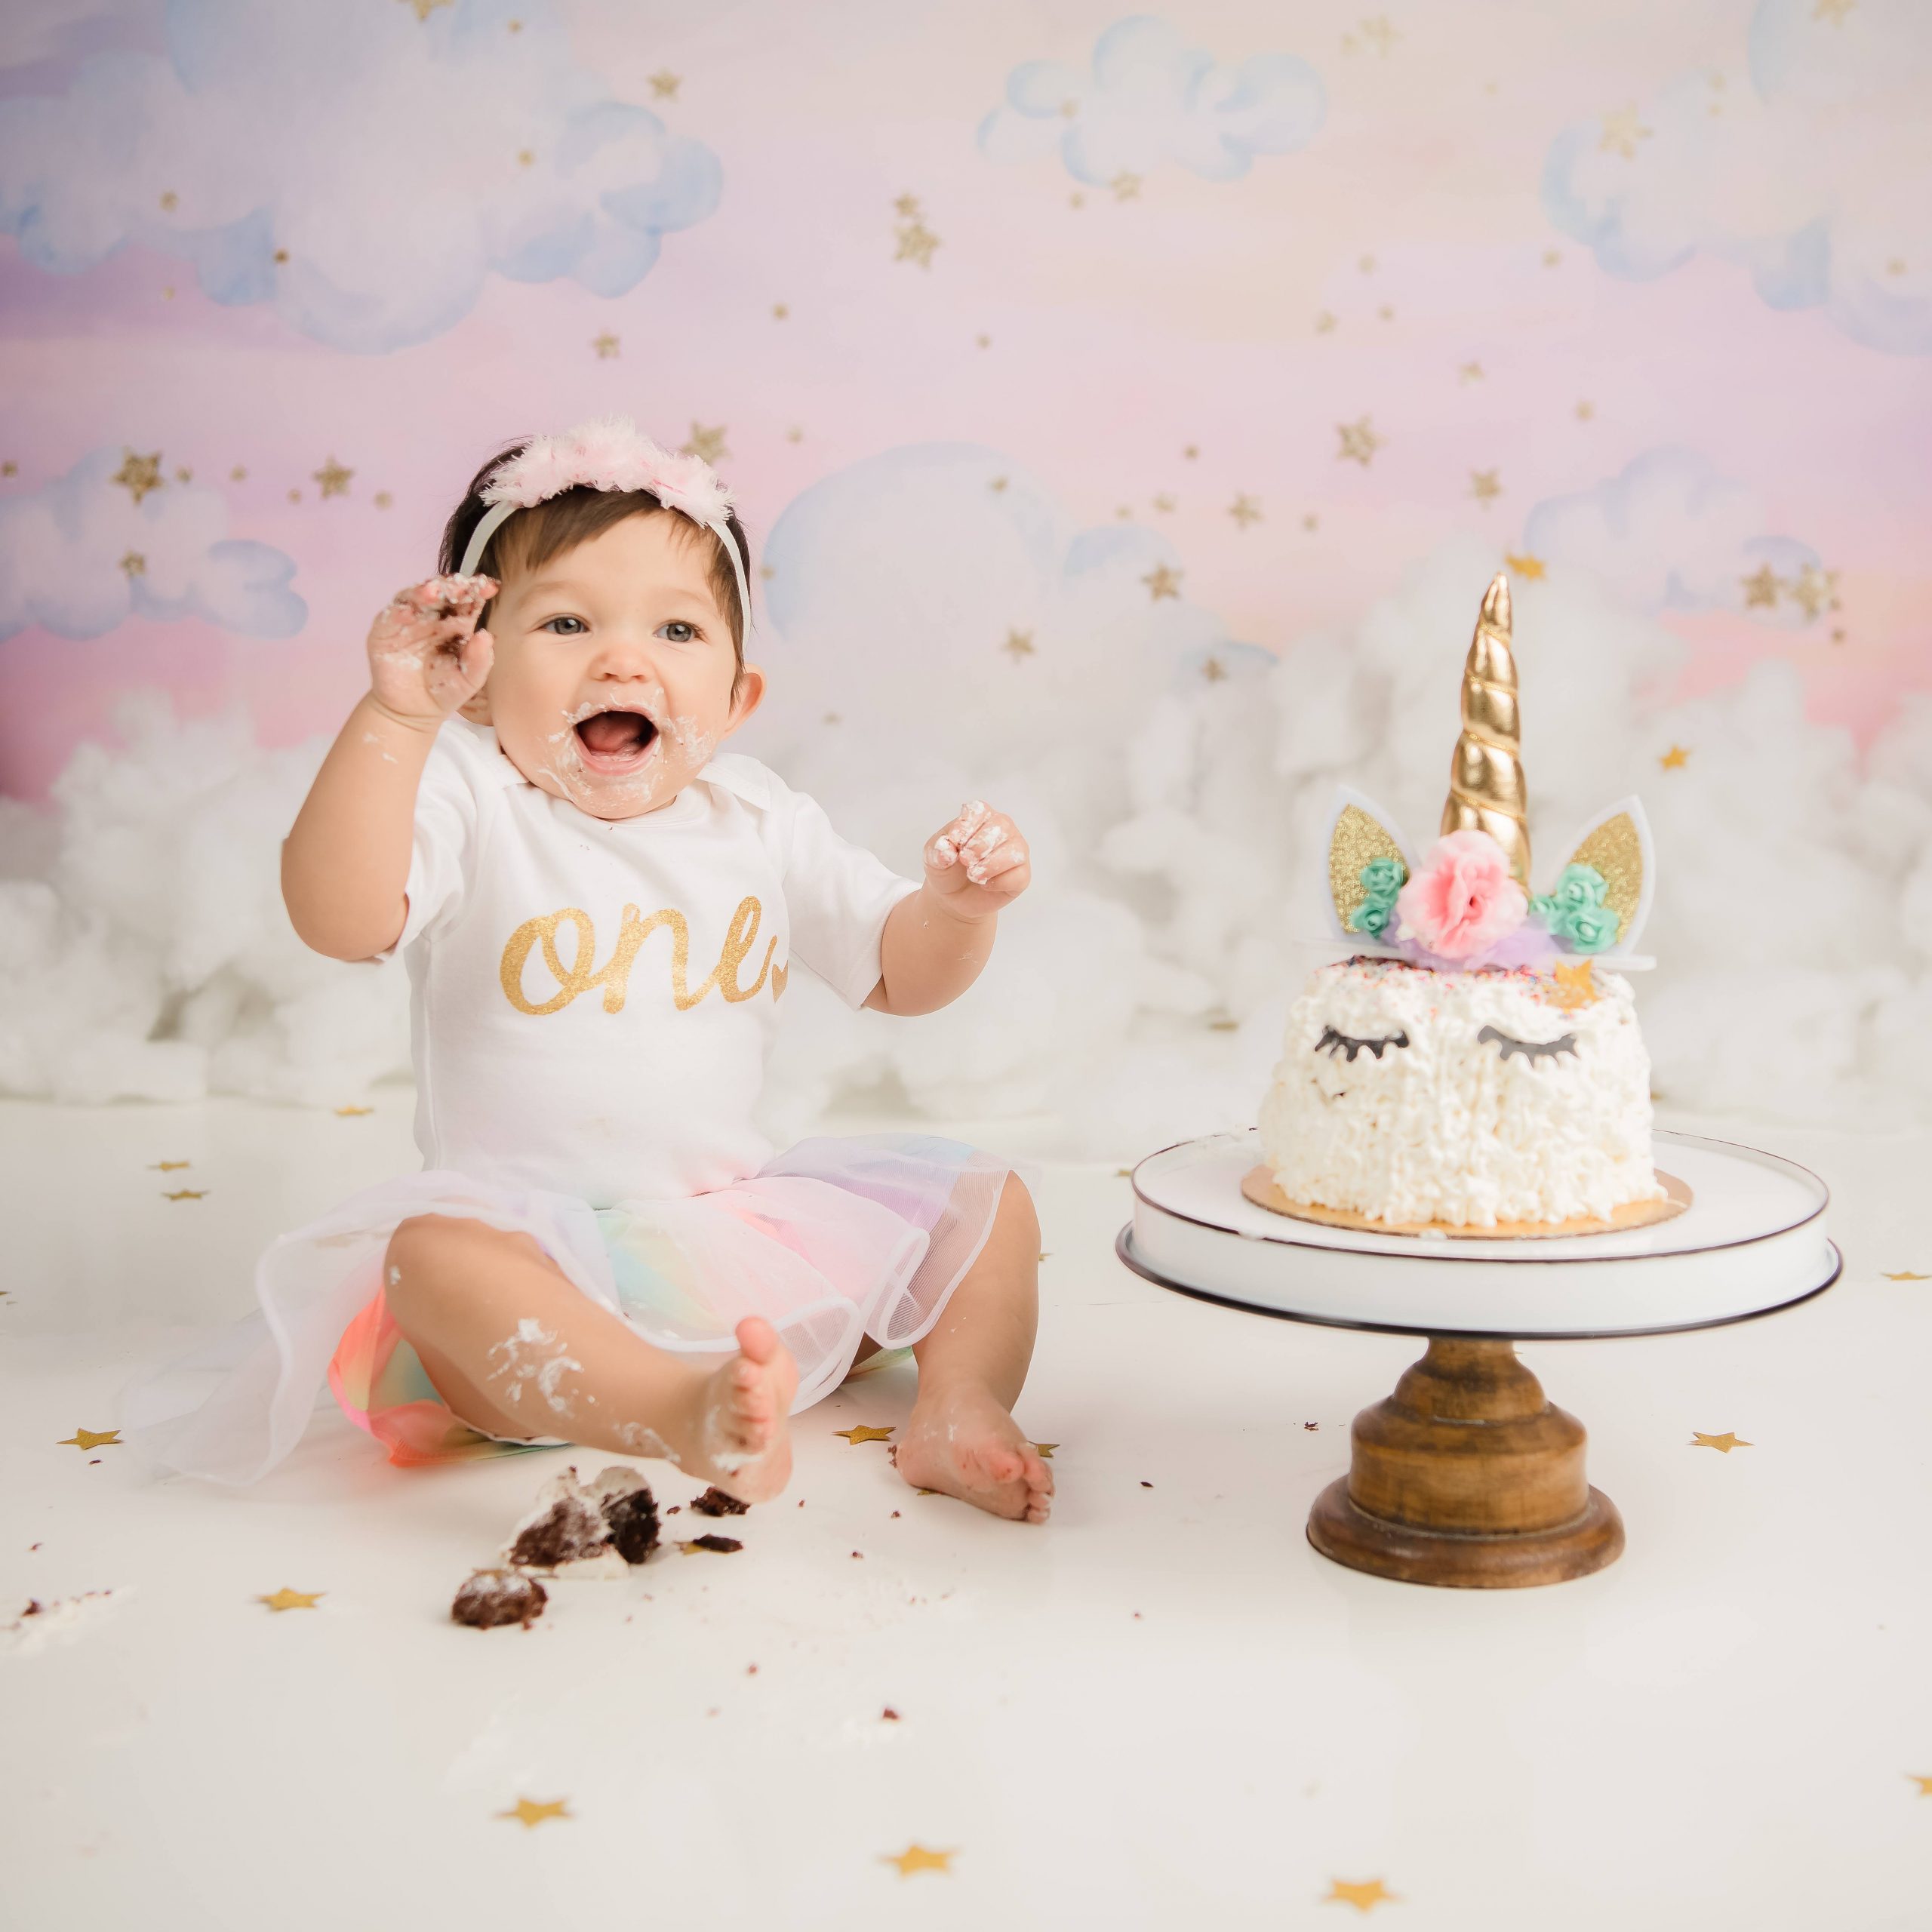 Kailene Jones Cake Smash 1008 scaled - Cake Smash - 1st Birthday